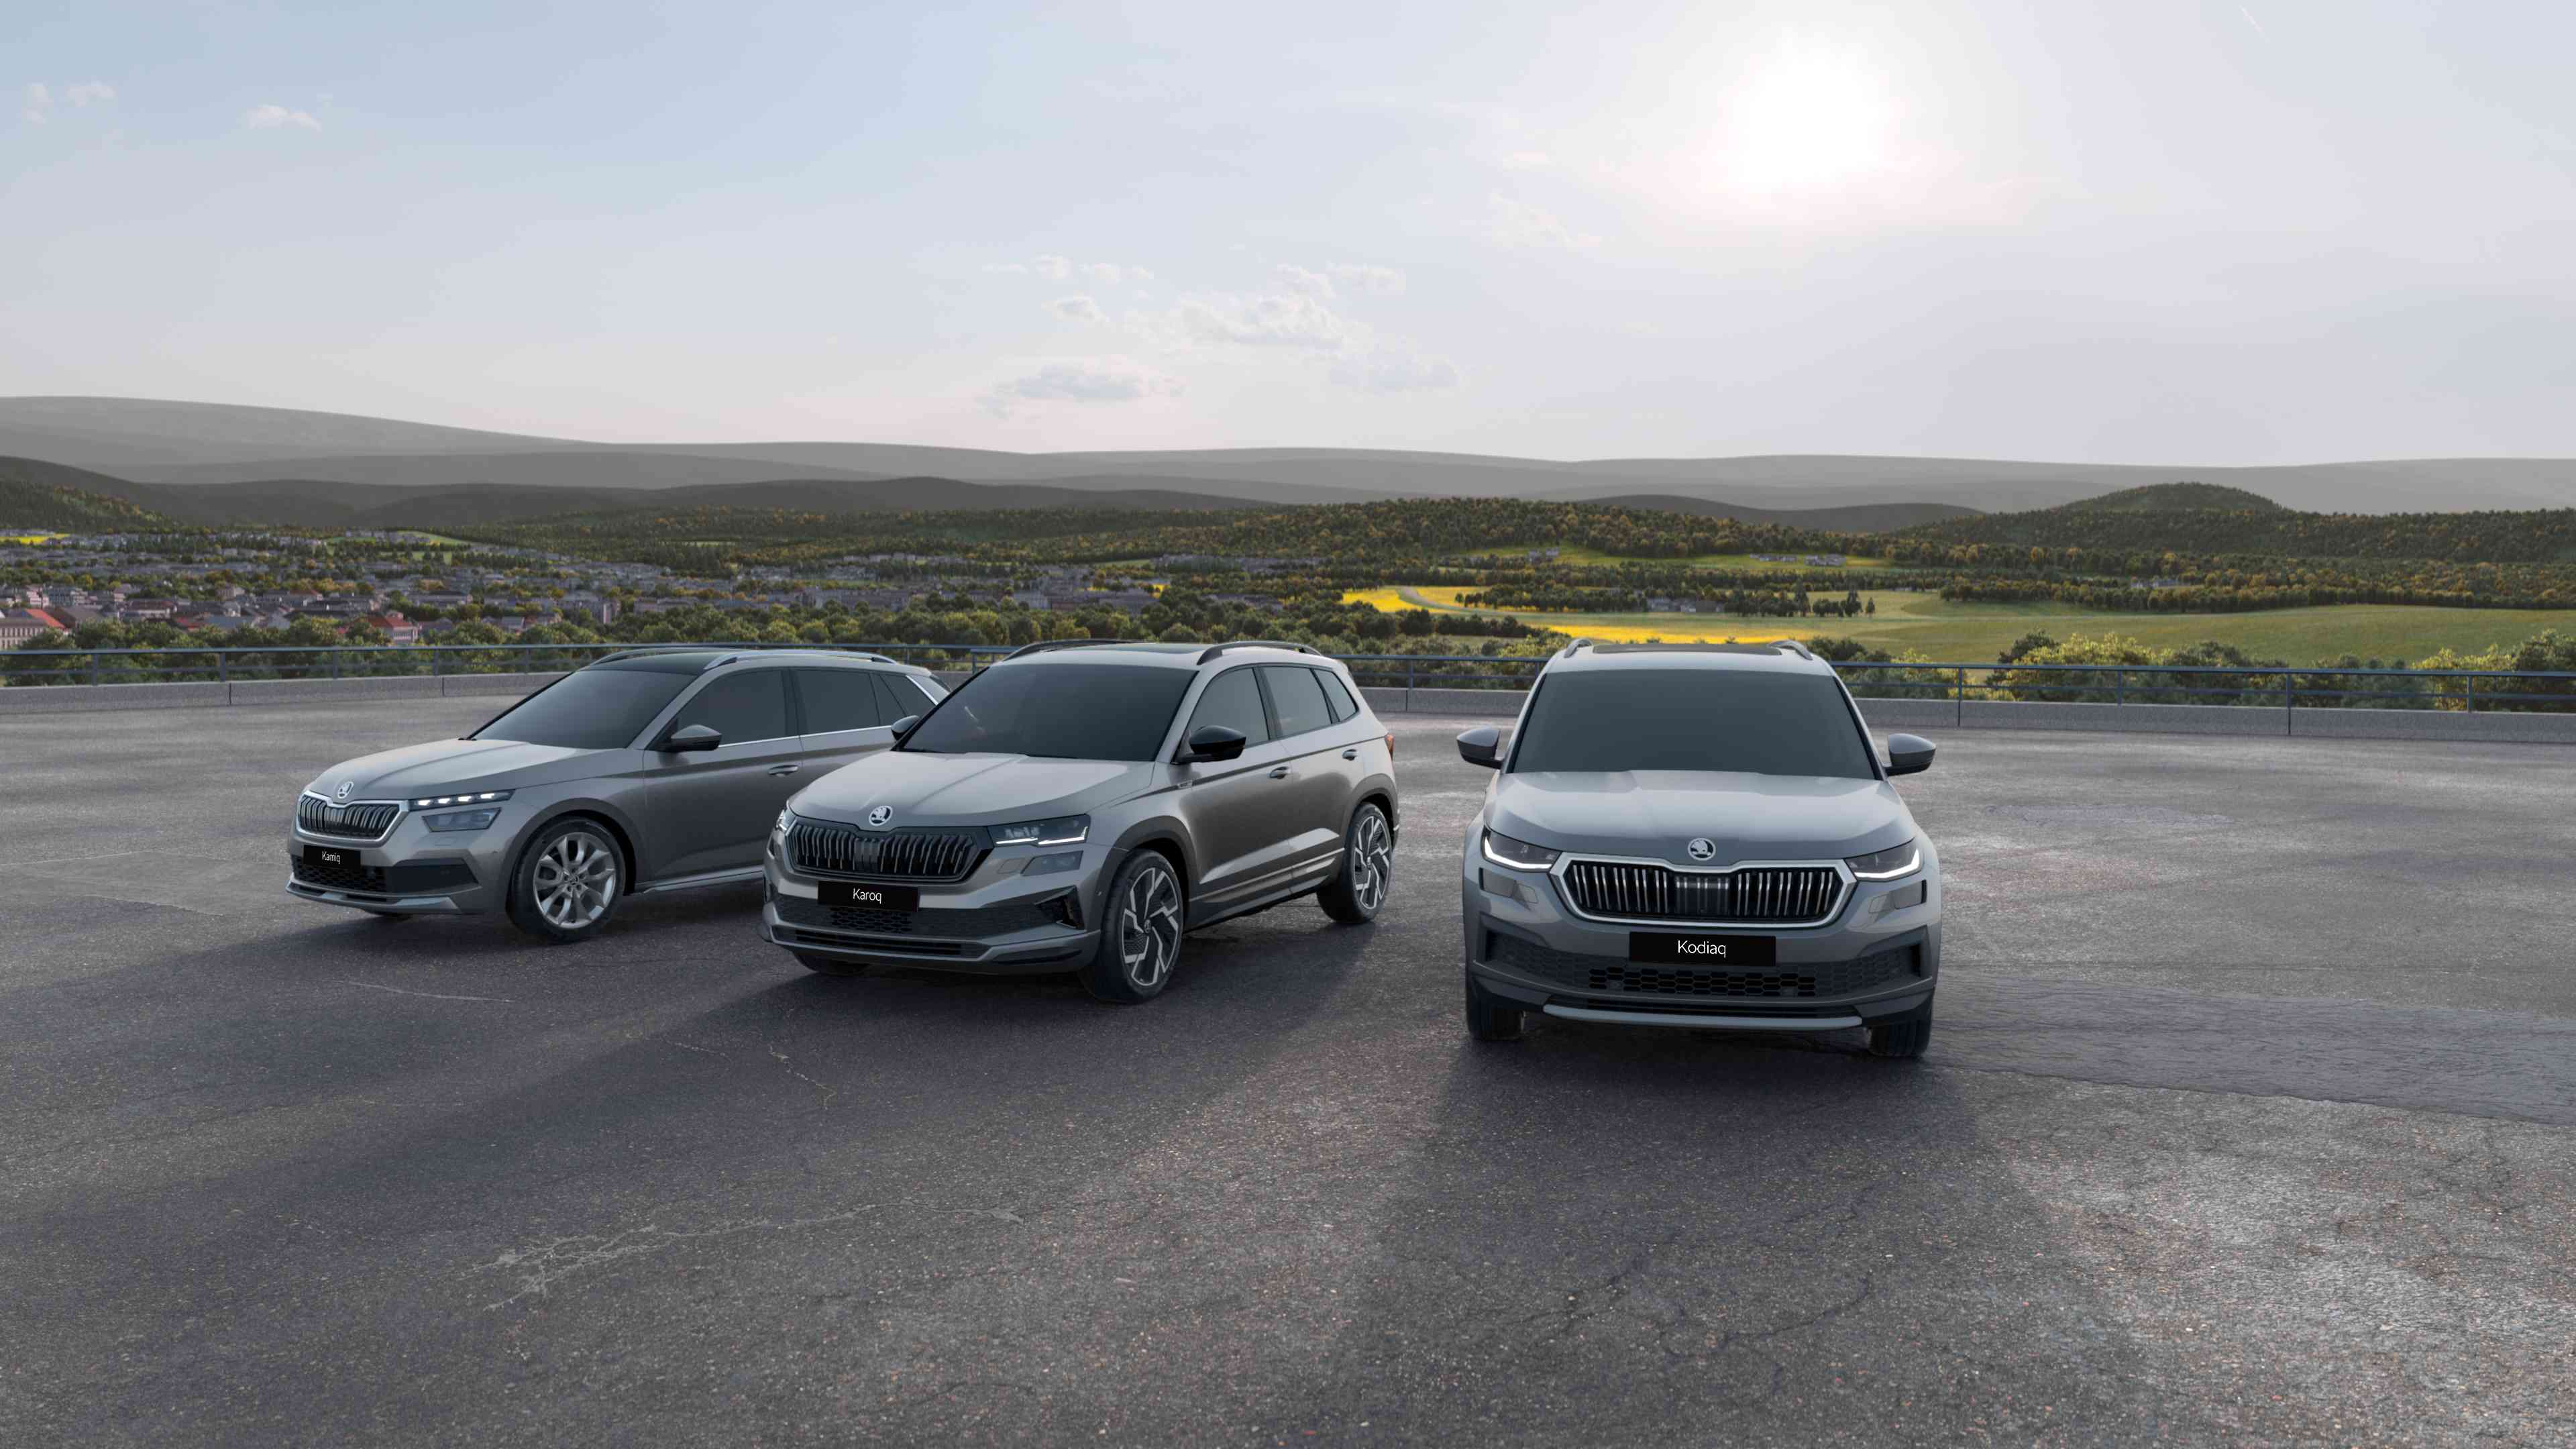  Škoda Taiwn 銷售再攀新高 創下品牌在台年度銷售最高紀錄